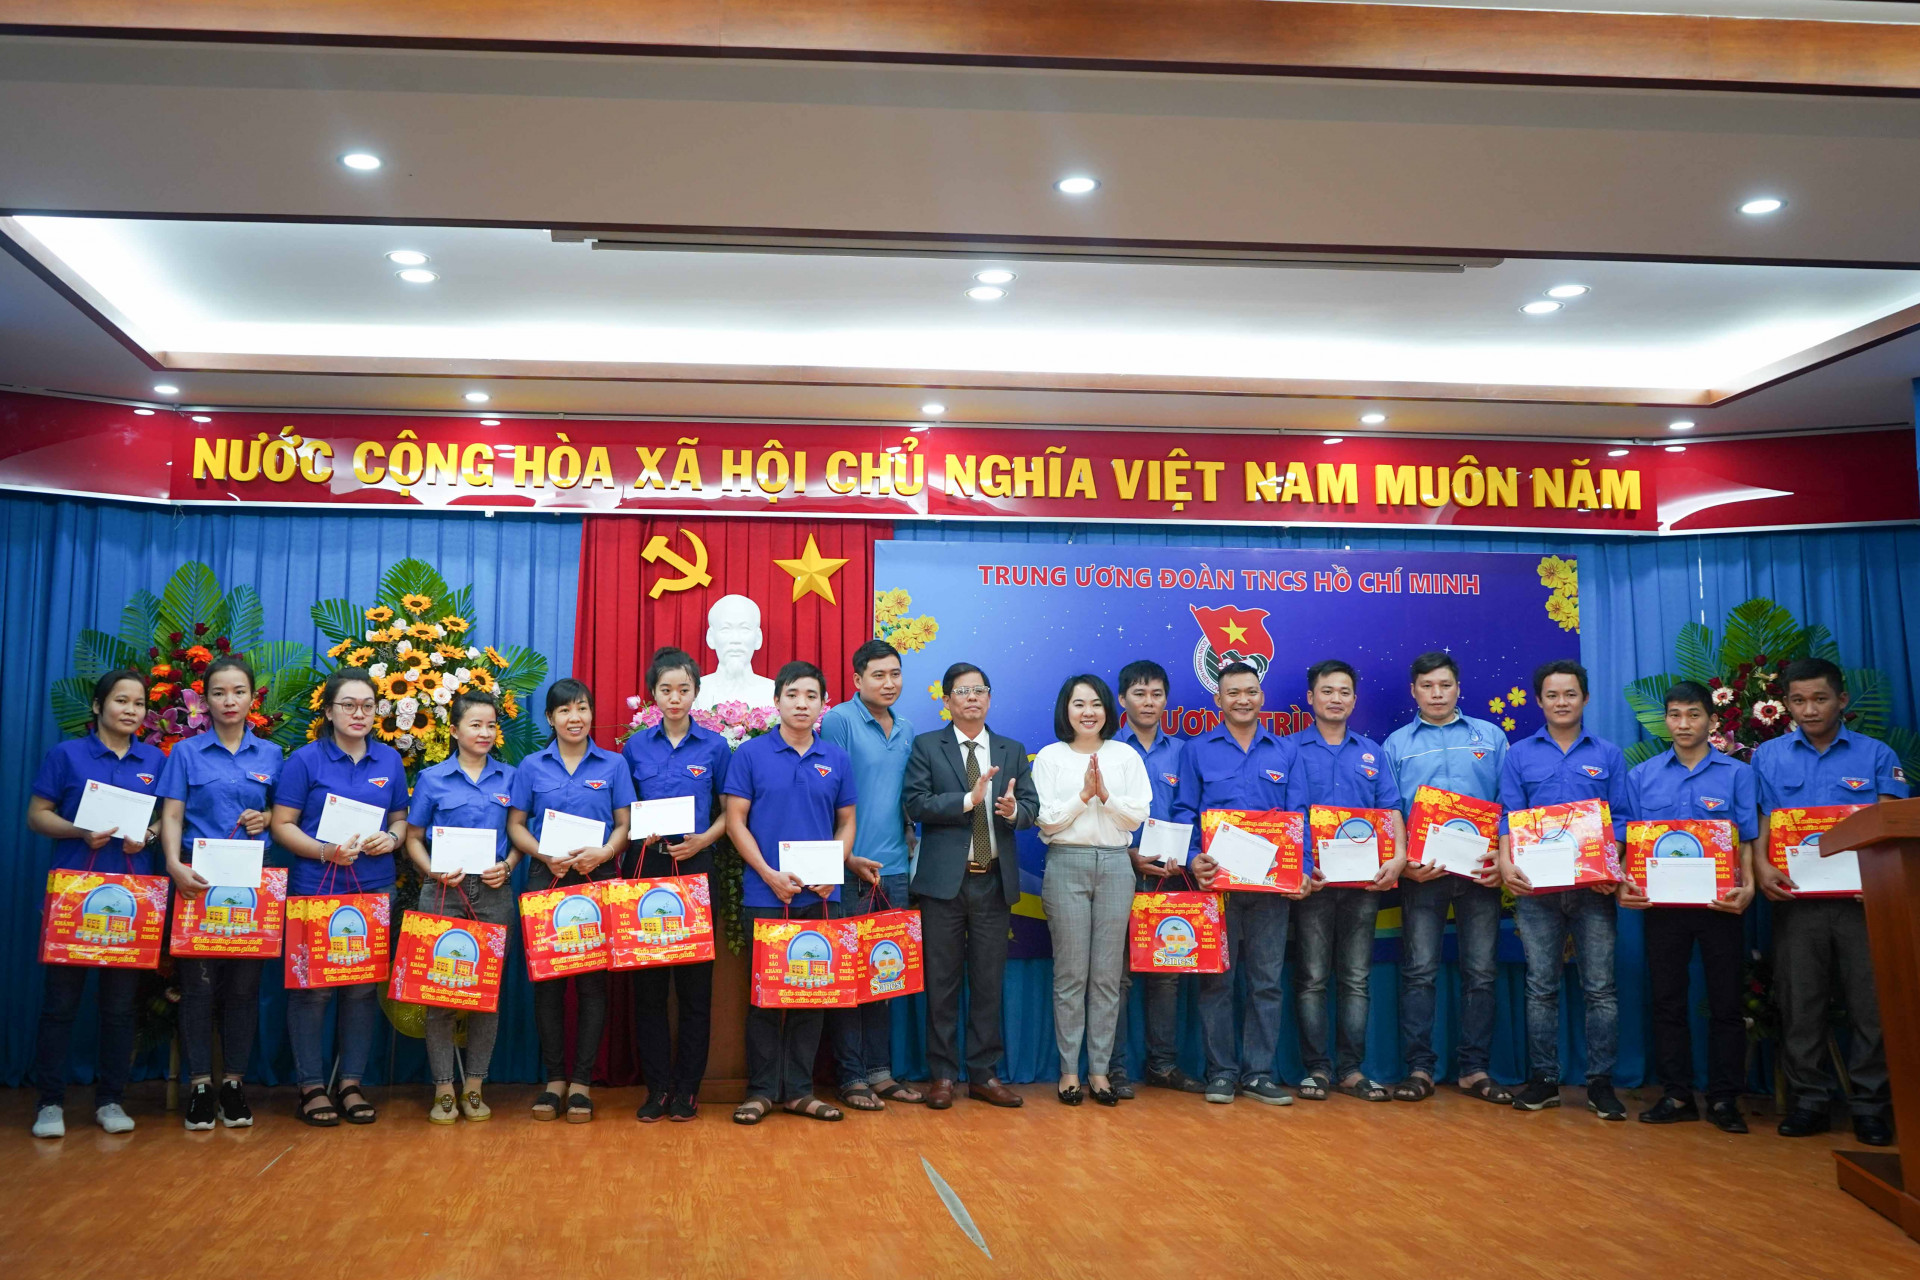 Đồng chí Nguyễn Tấn Tuân cùng lãnh đạo Ban Thanh niên công nhân và đô thị Trung ương Đoàn trao quà cho các thanh niên công nhân